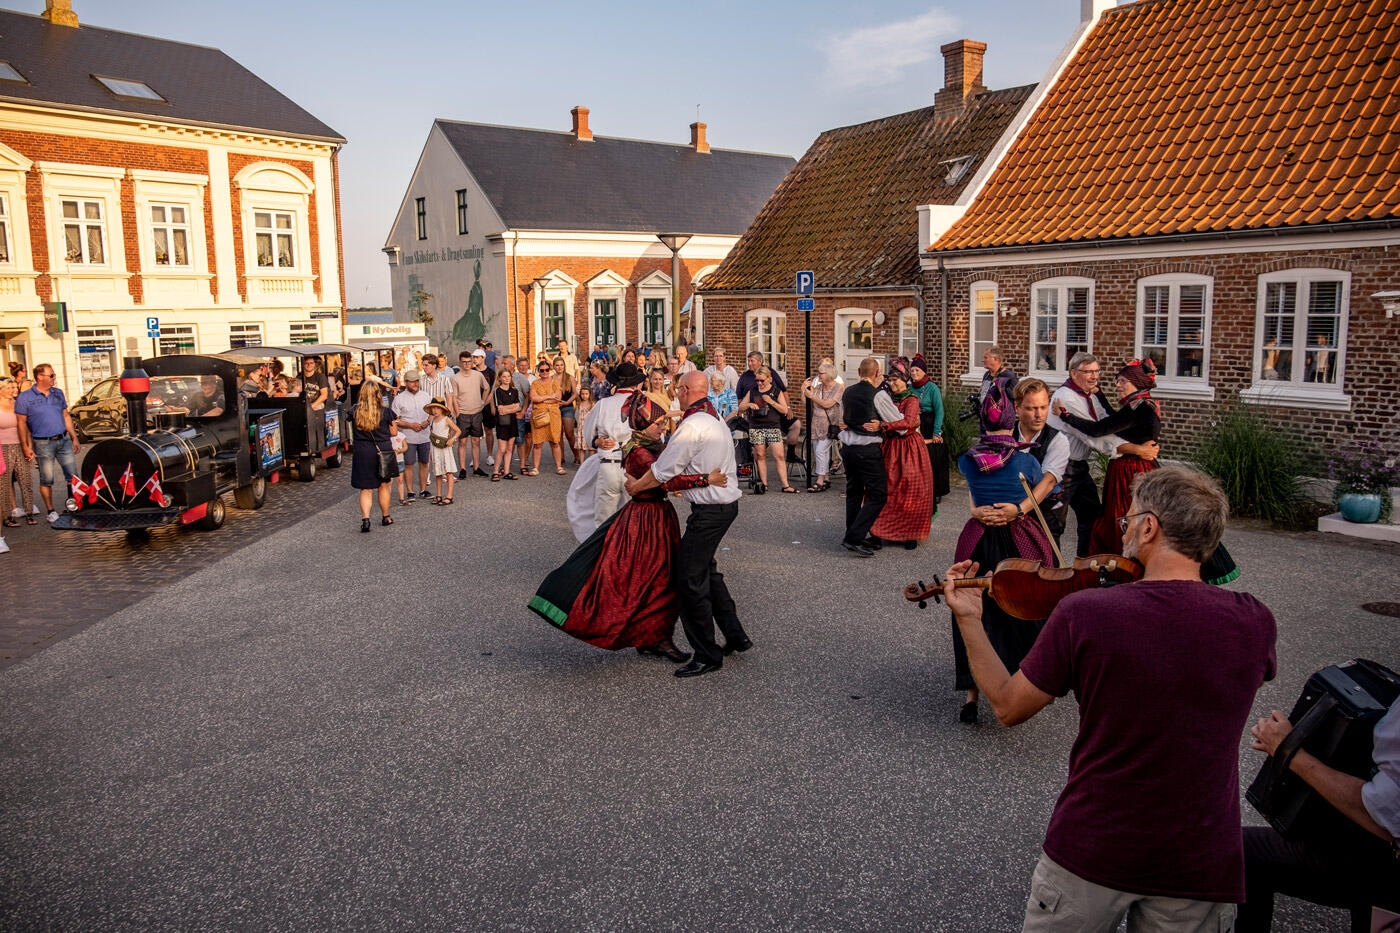 Menschen in tradizionellen Gewändern beim Tanzen auf einen großen Platz. Im Hintergrund stehen bunte Häuser.